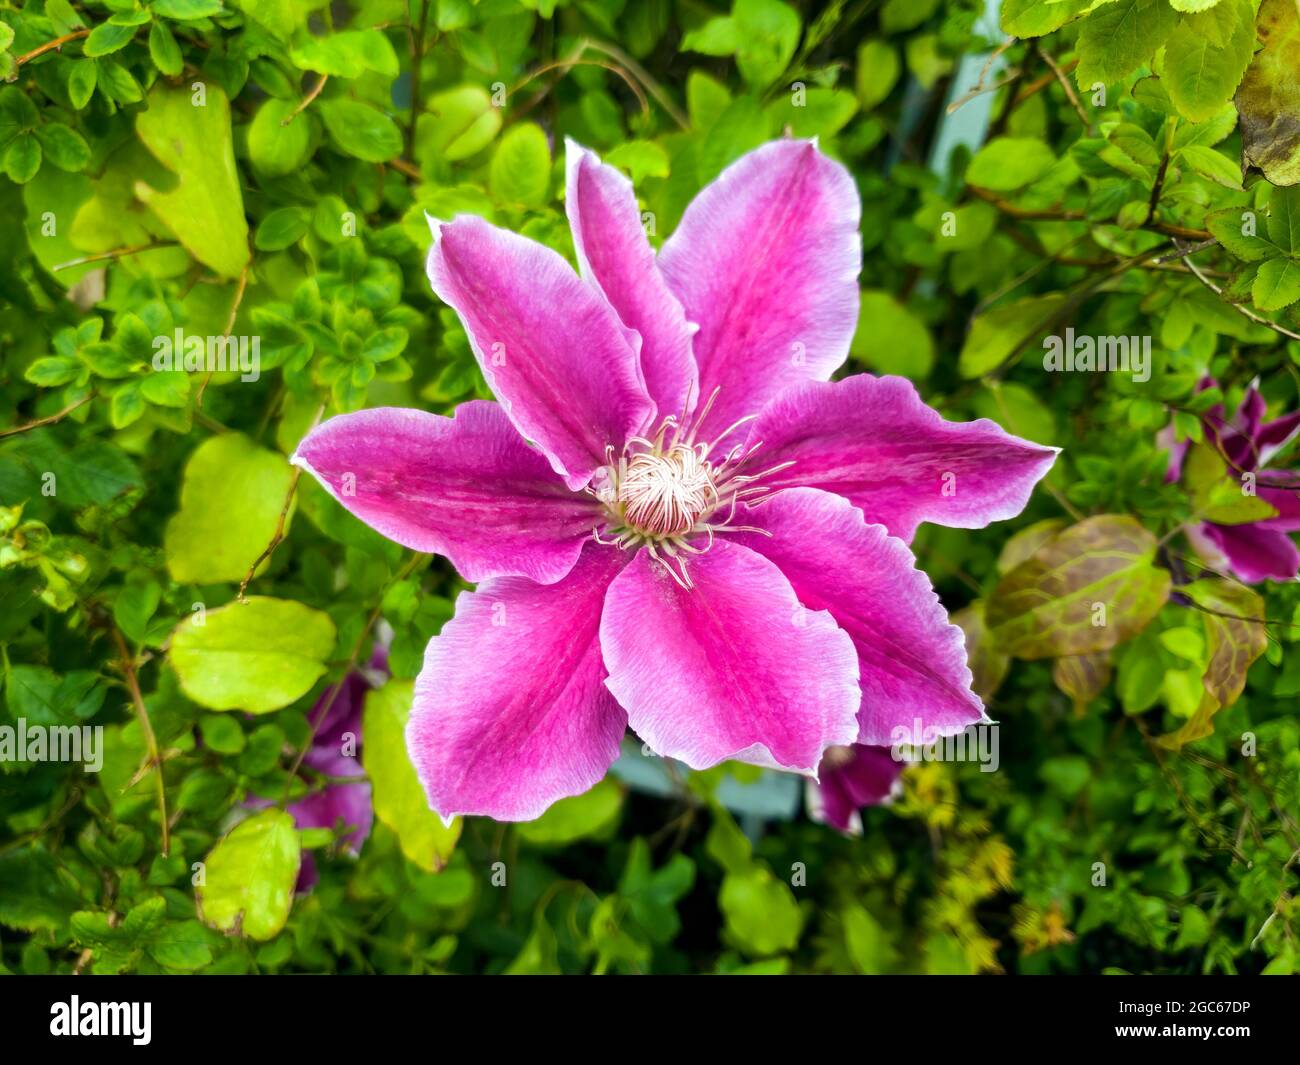 Clematis Una planta florida de primavera con una flor de verano púrpura comúnmente conocida como foto imagen de stock Foto de stock